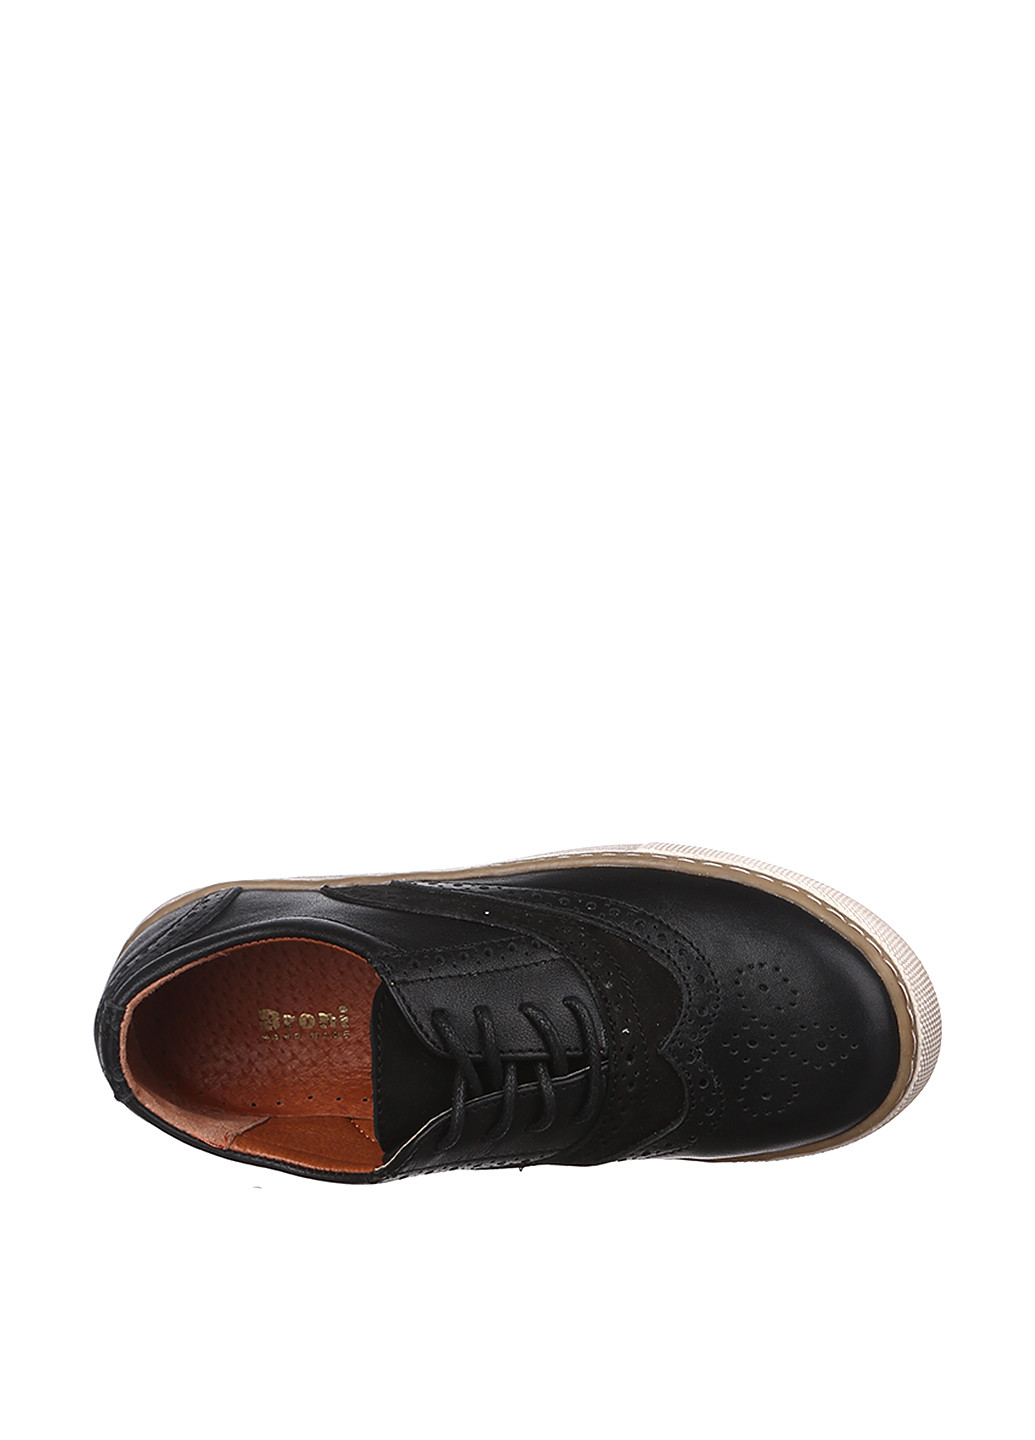 Черные туфли со шнурками Broni